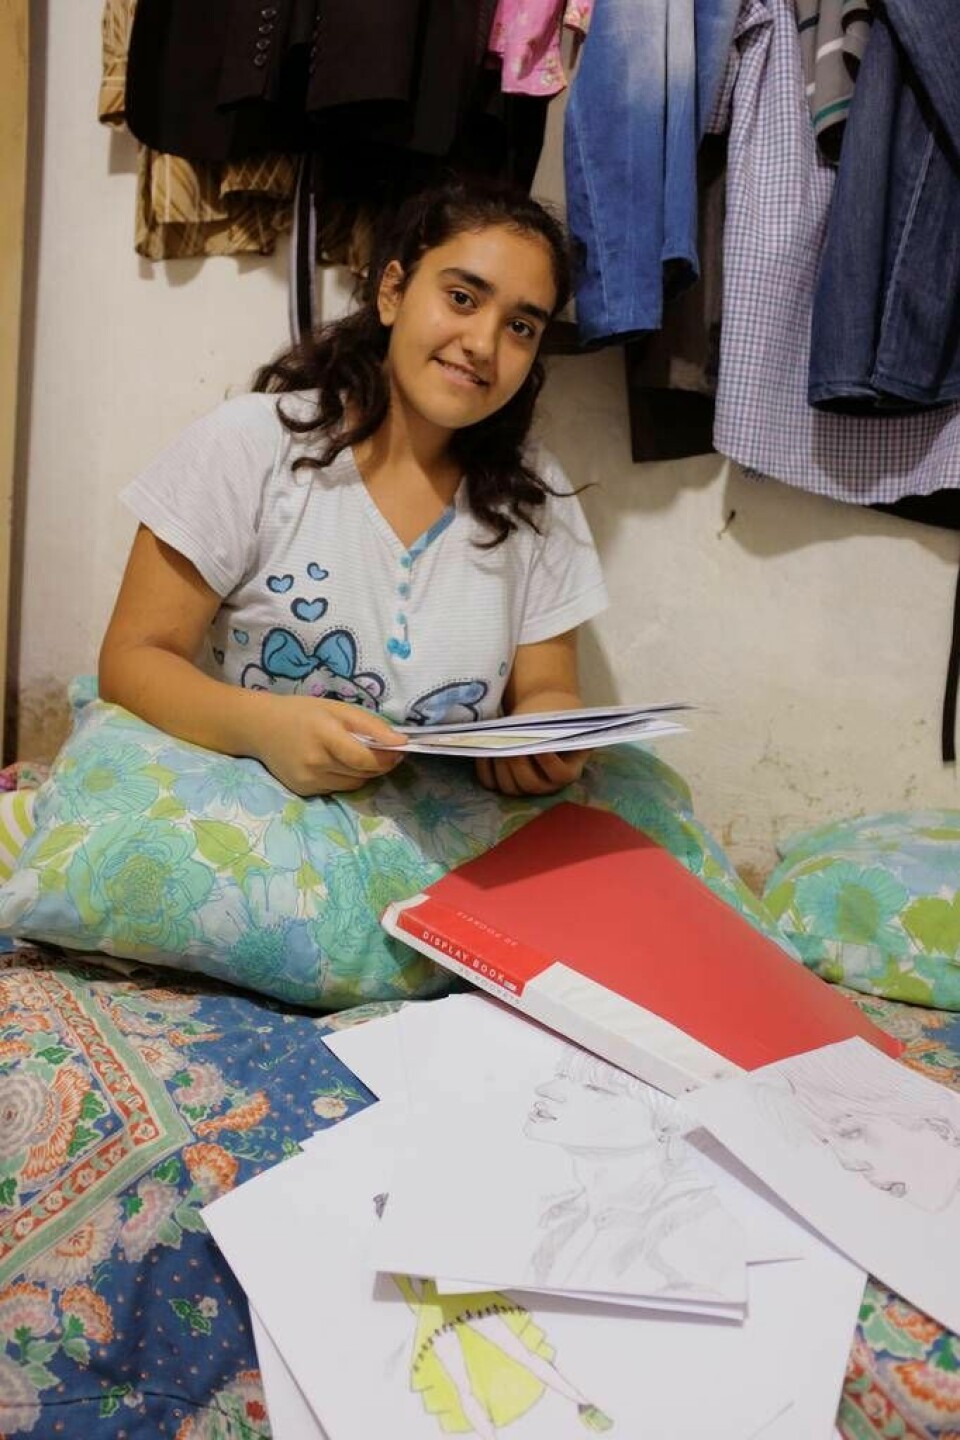 ”Jag vill bli designer och hjälpa fattiga”, säger Slava, 13 år och kurdisk flykting i Libanon. Foto: Kari Fure